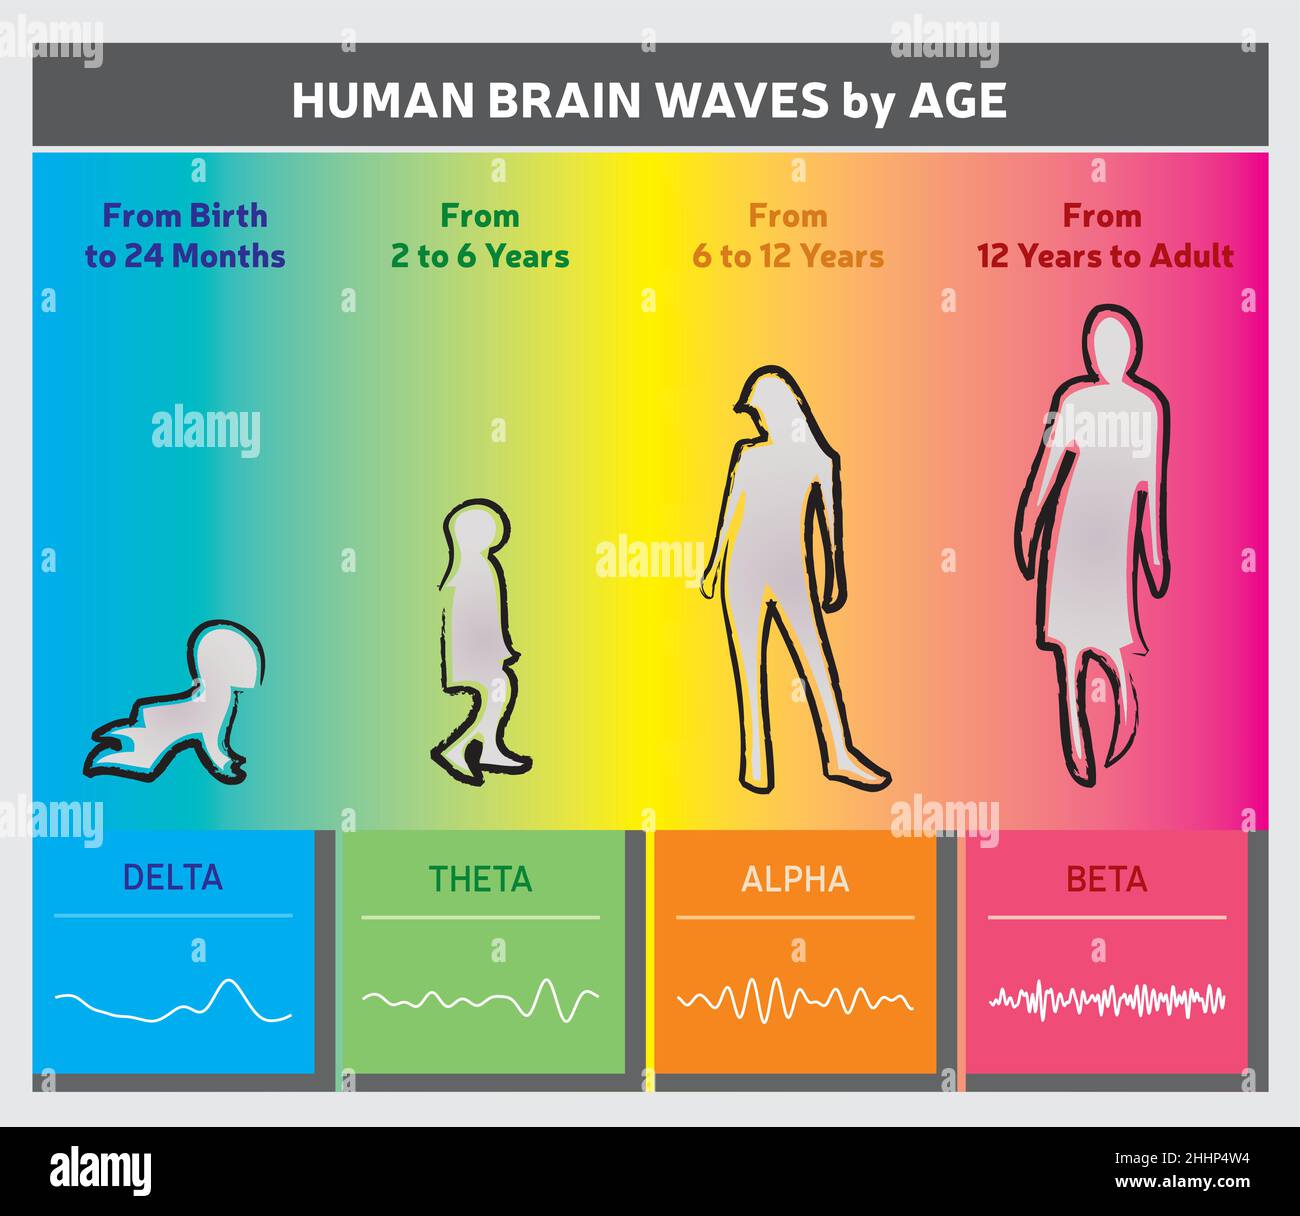 Menschliche Gehirnwellen nach Alter Diagramm - Menschen Silhouetten - Regenbogenfarben Stock Vektor